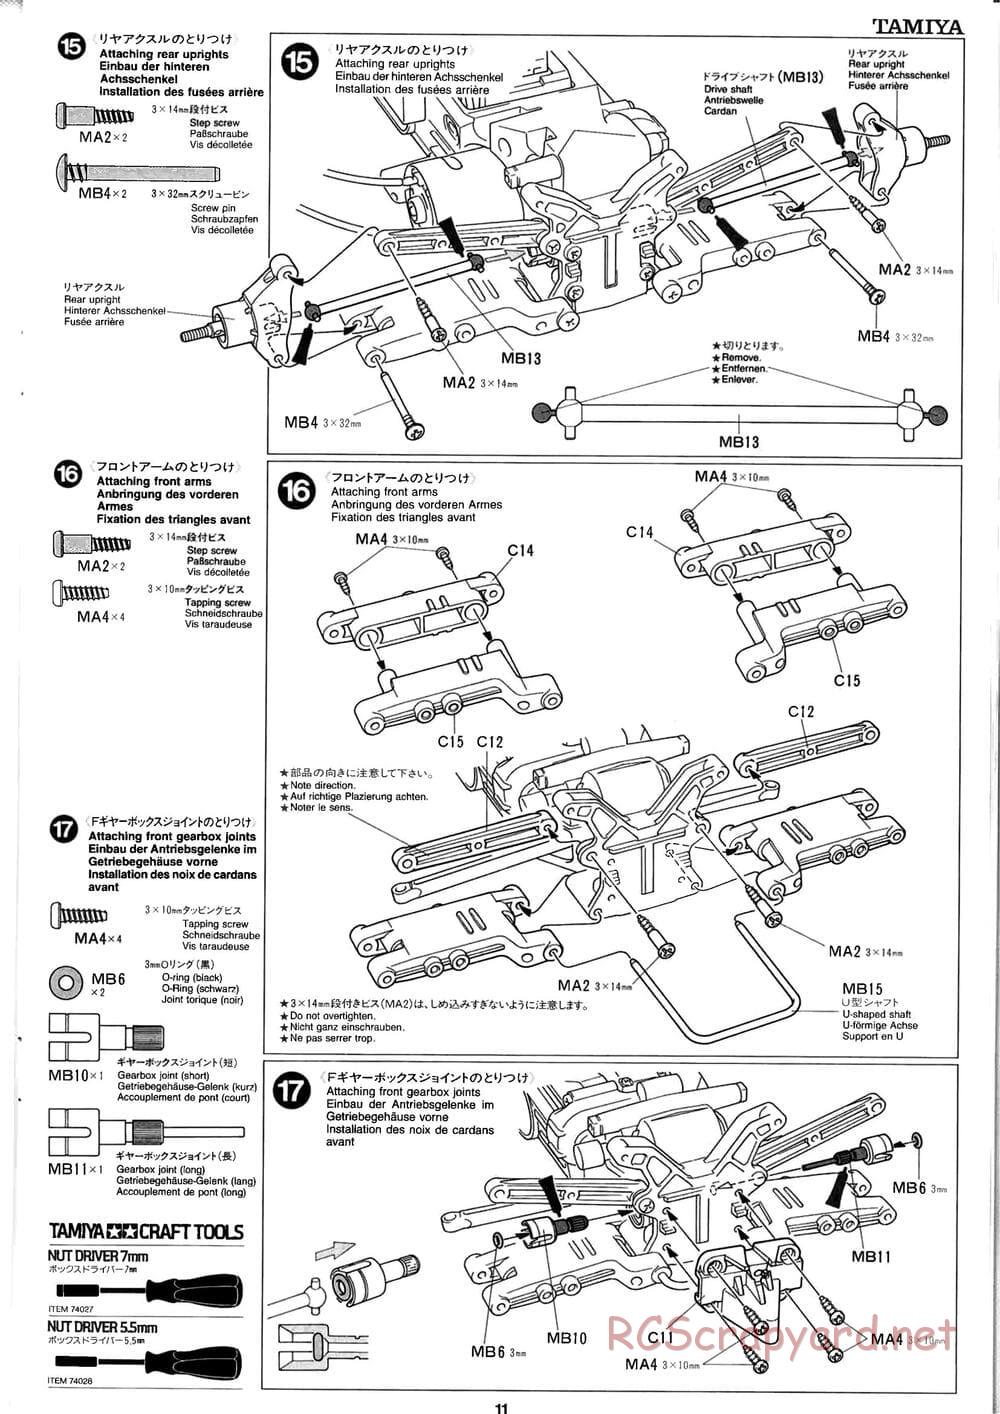 Tamiya - Baja Champ - TL-01B Chassis - Manual - Page 11